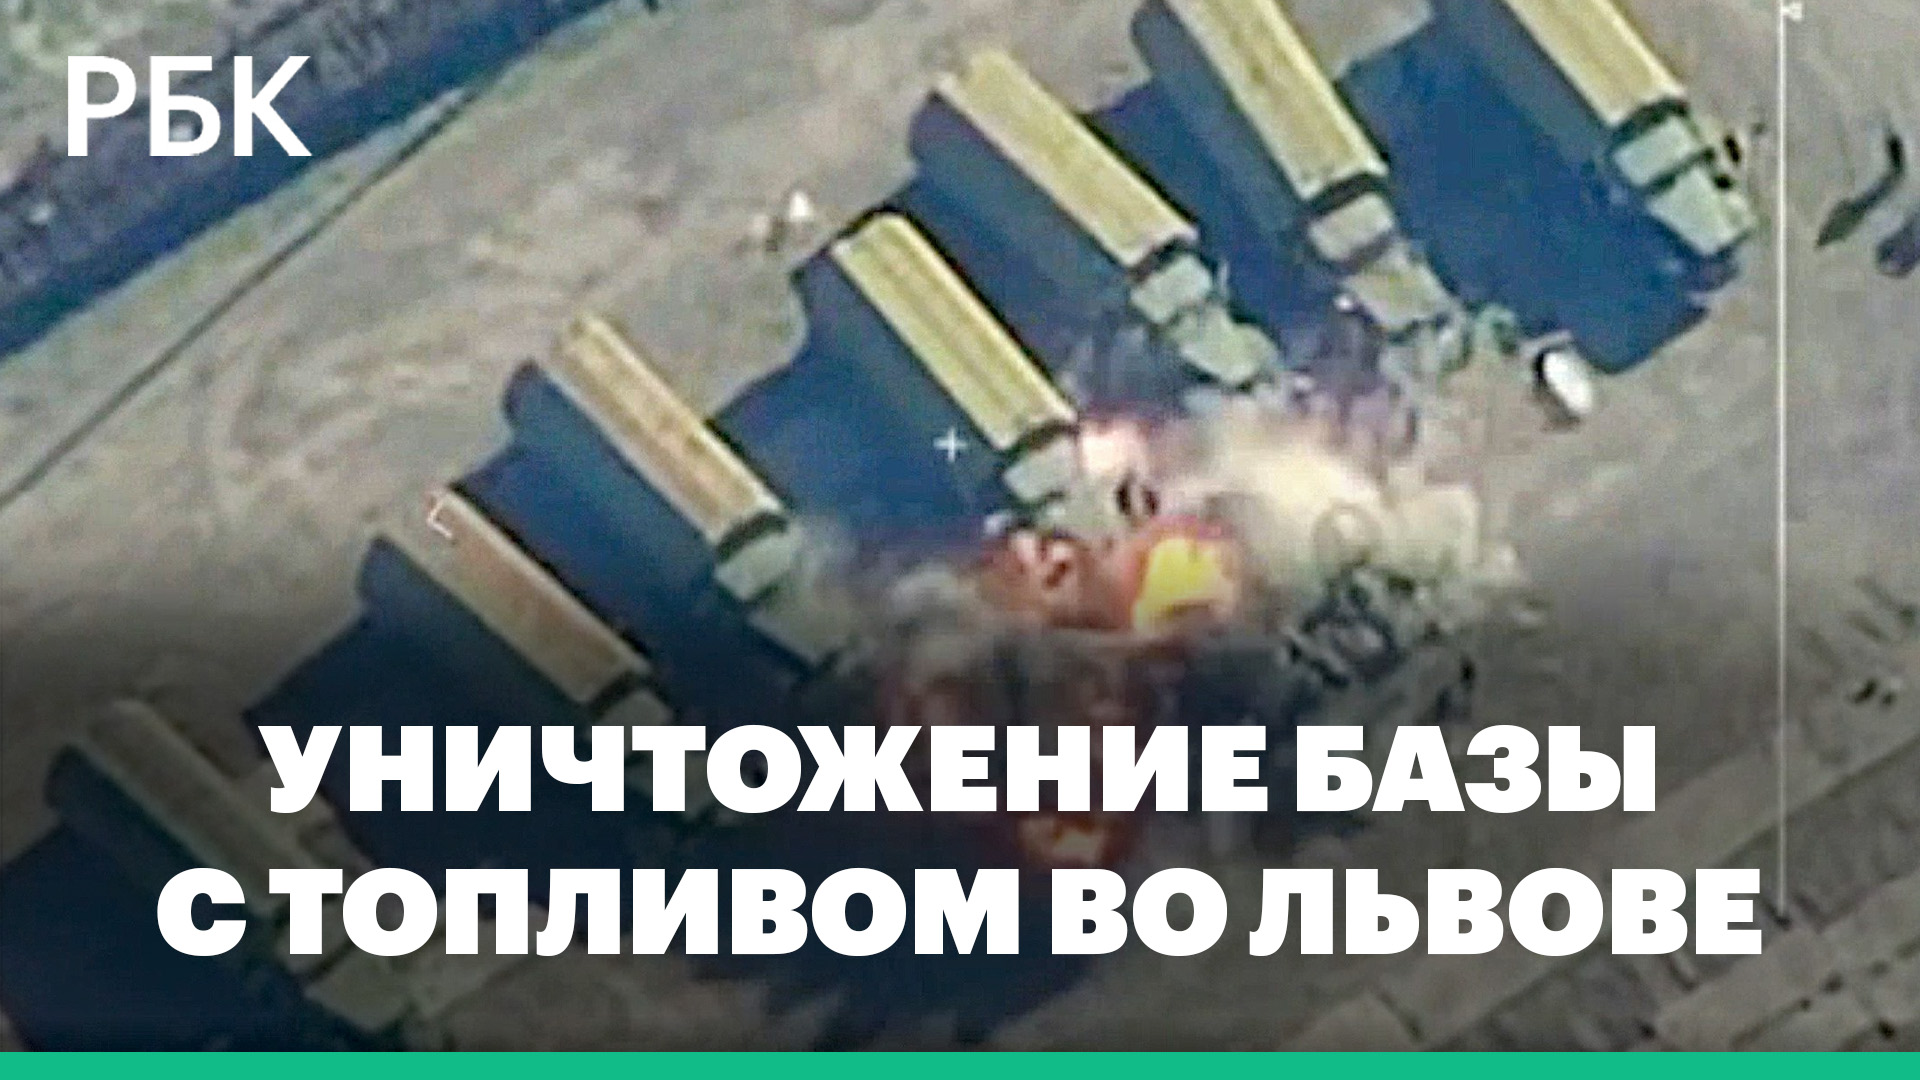 Минобороны сообщило об уничтожении базы с топливом во Львове